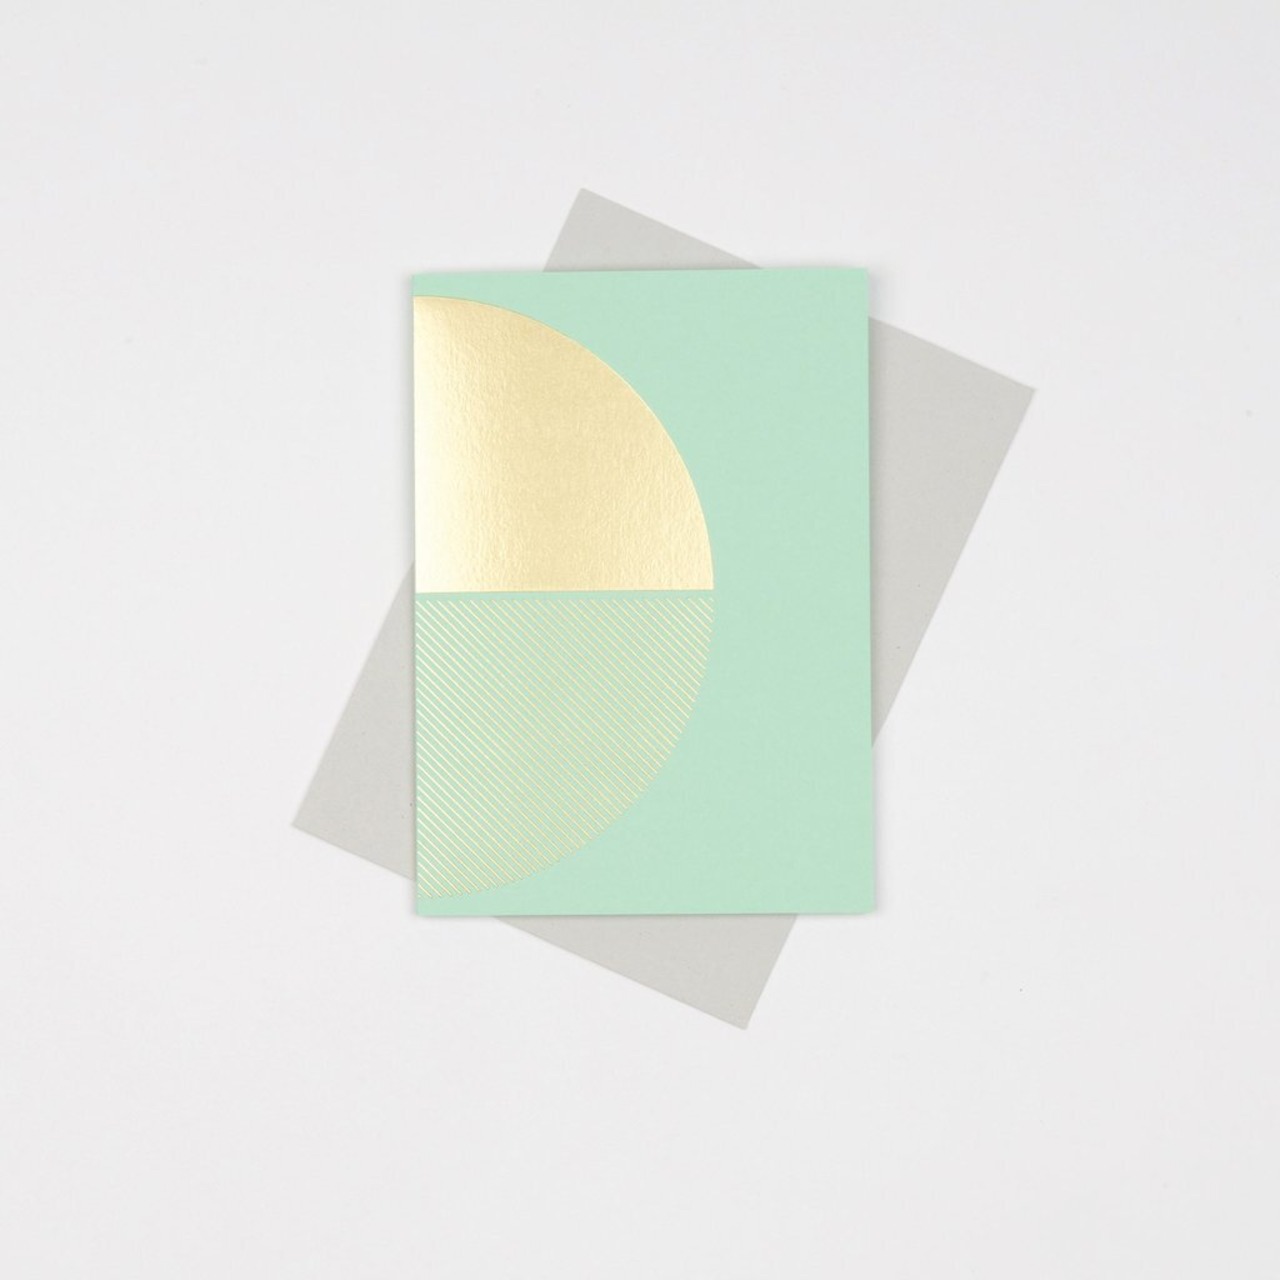 ⚫︎TOM PIGEON/Reflex card Brass Mint